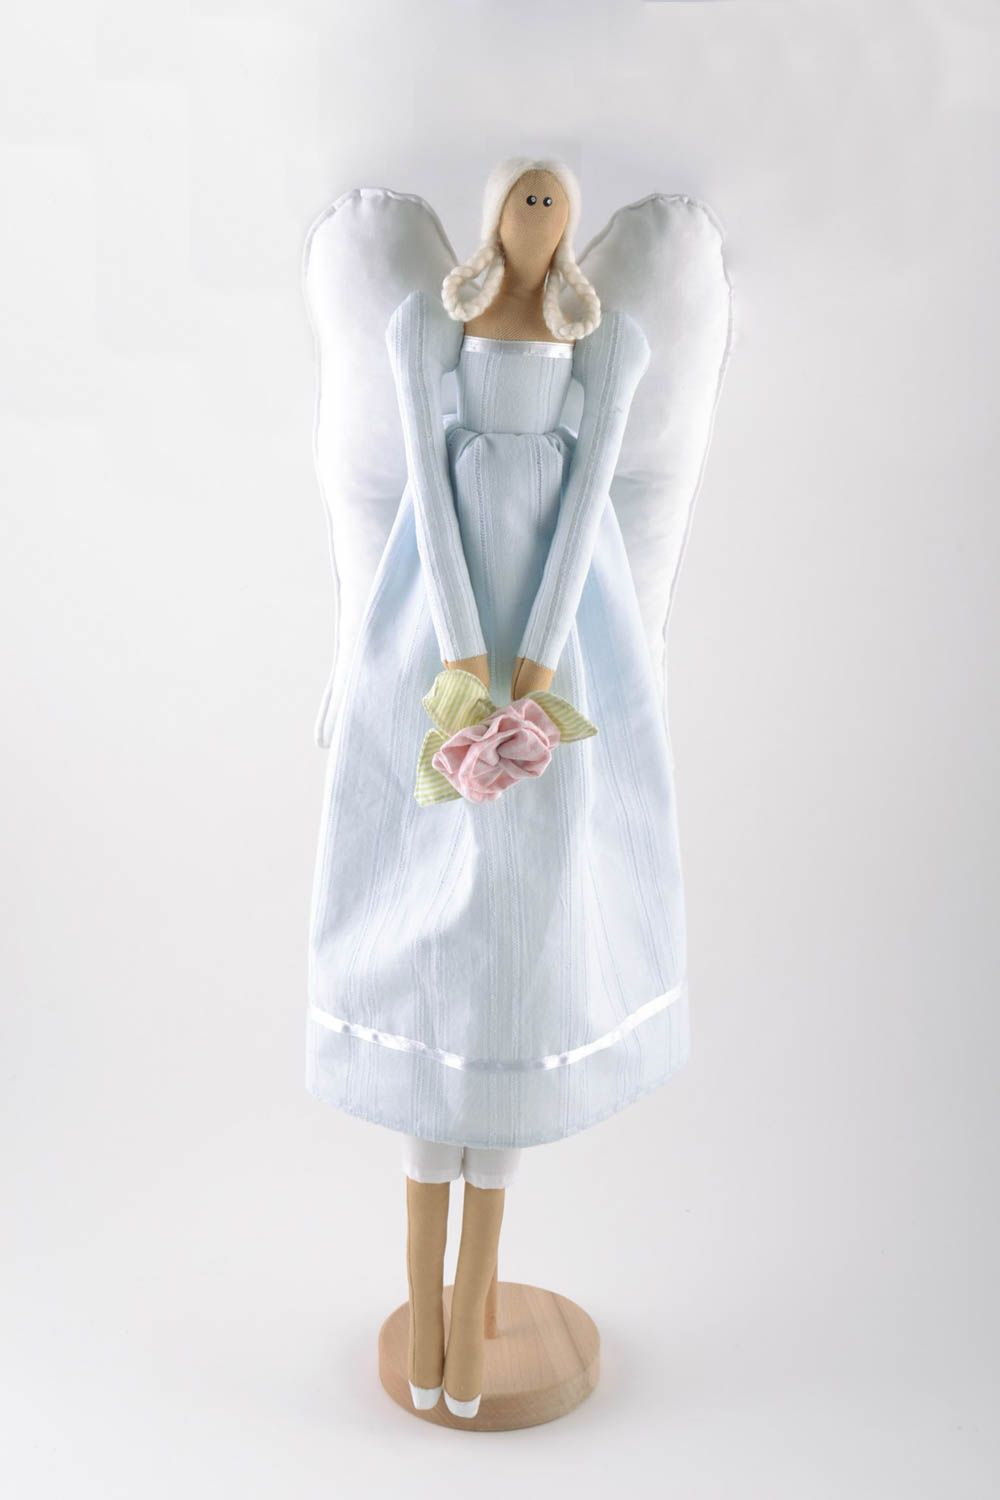 Авторская игрушка на подставке ручной работы фея в голубом платье красивая фото 5